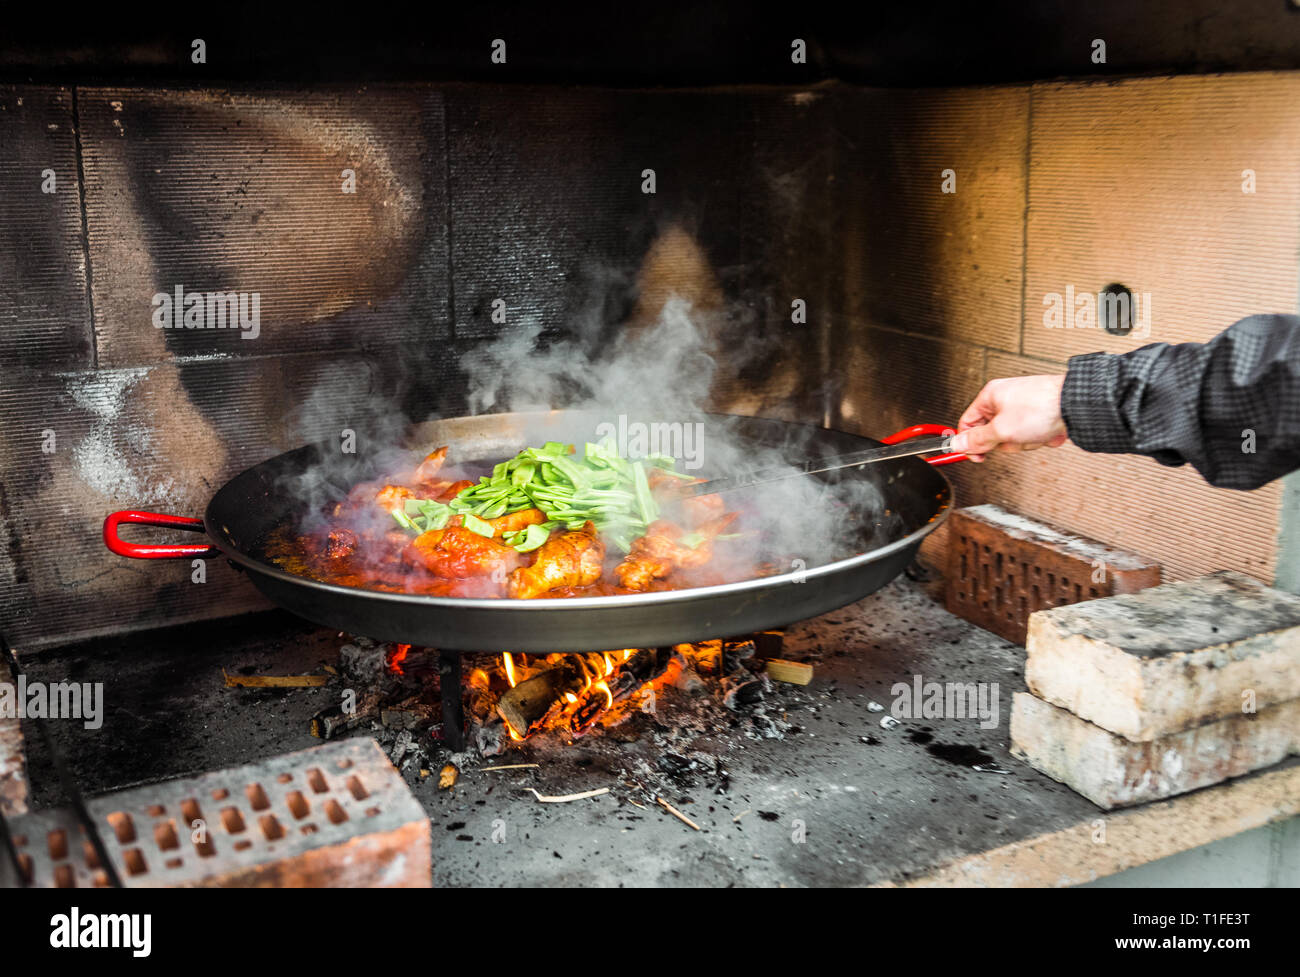 Kochen und eine traditionelle spanische Paella über offenem Feuer. Die traditionelle Art der Vorbereitung valencianische Paella mit Feuer und Flamme in einem großen Topf. Stockfoto